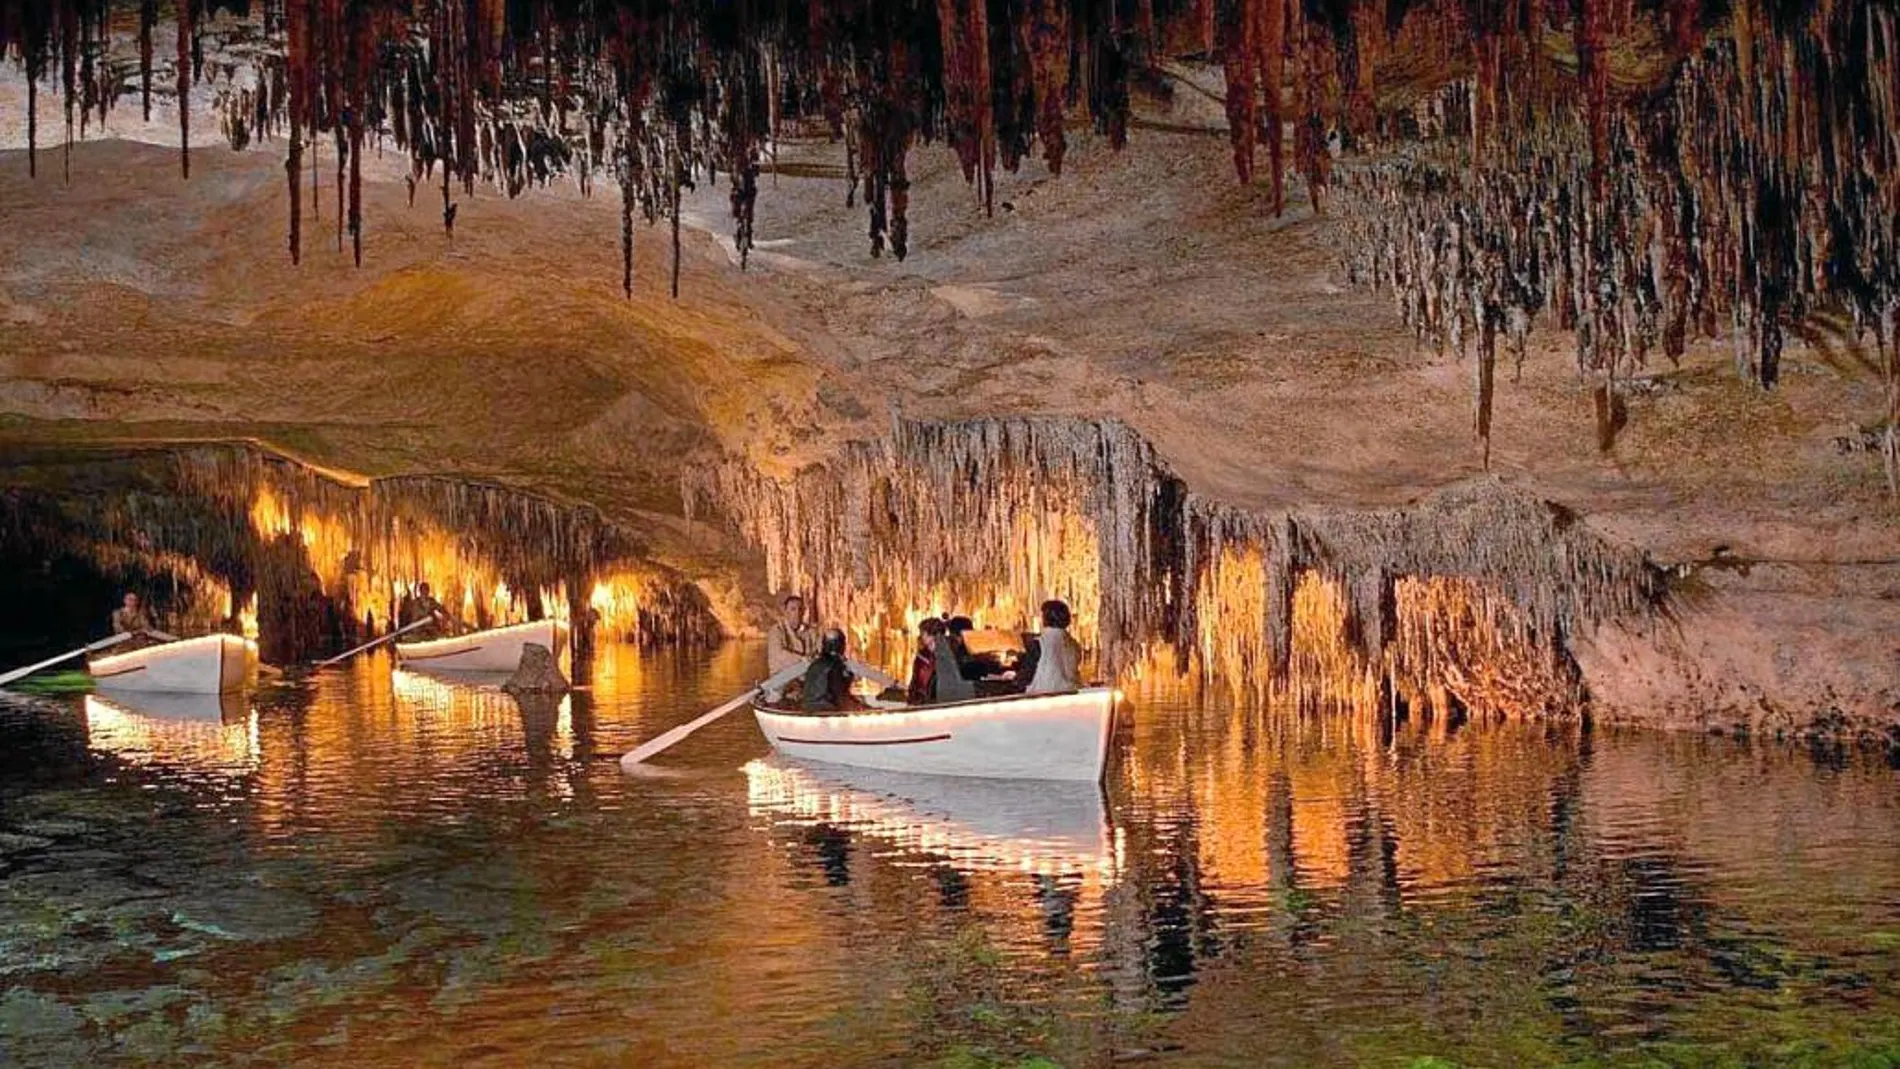 Las Cuevas del Drach alcanzan dos kilómetros y medio de longitud y descienden a 25 metros de profundidad